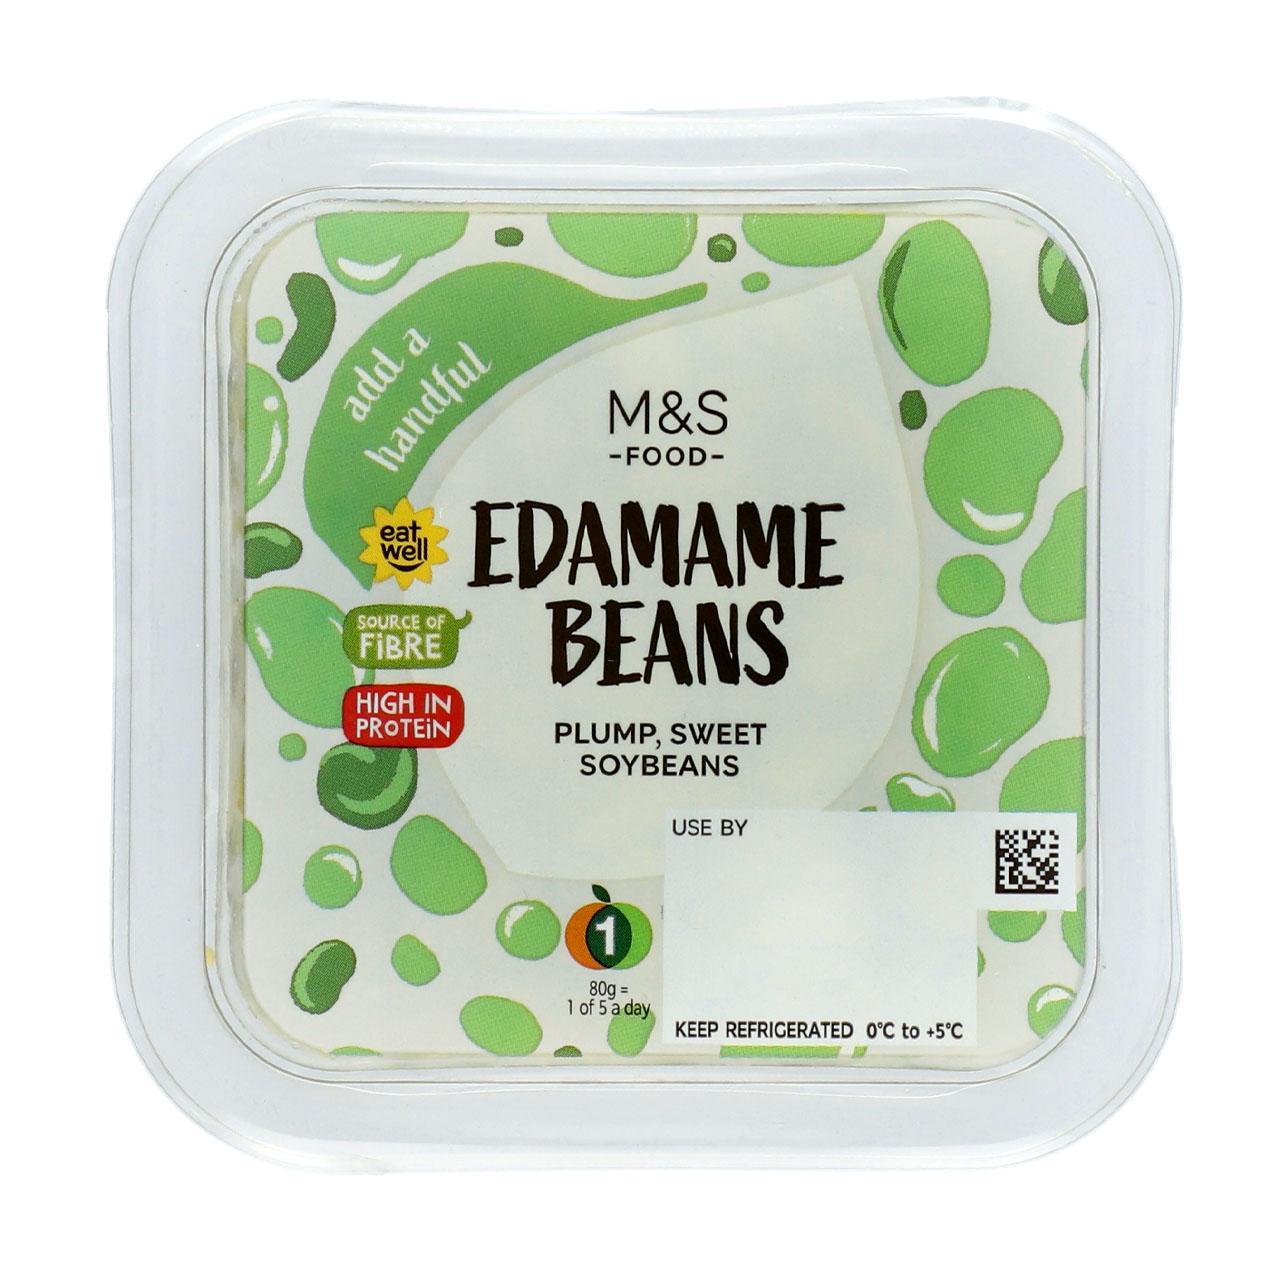 M&S Edamame Beans